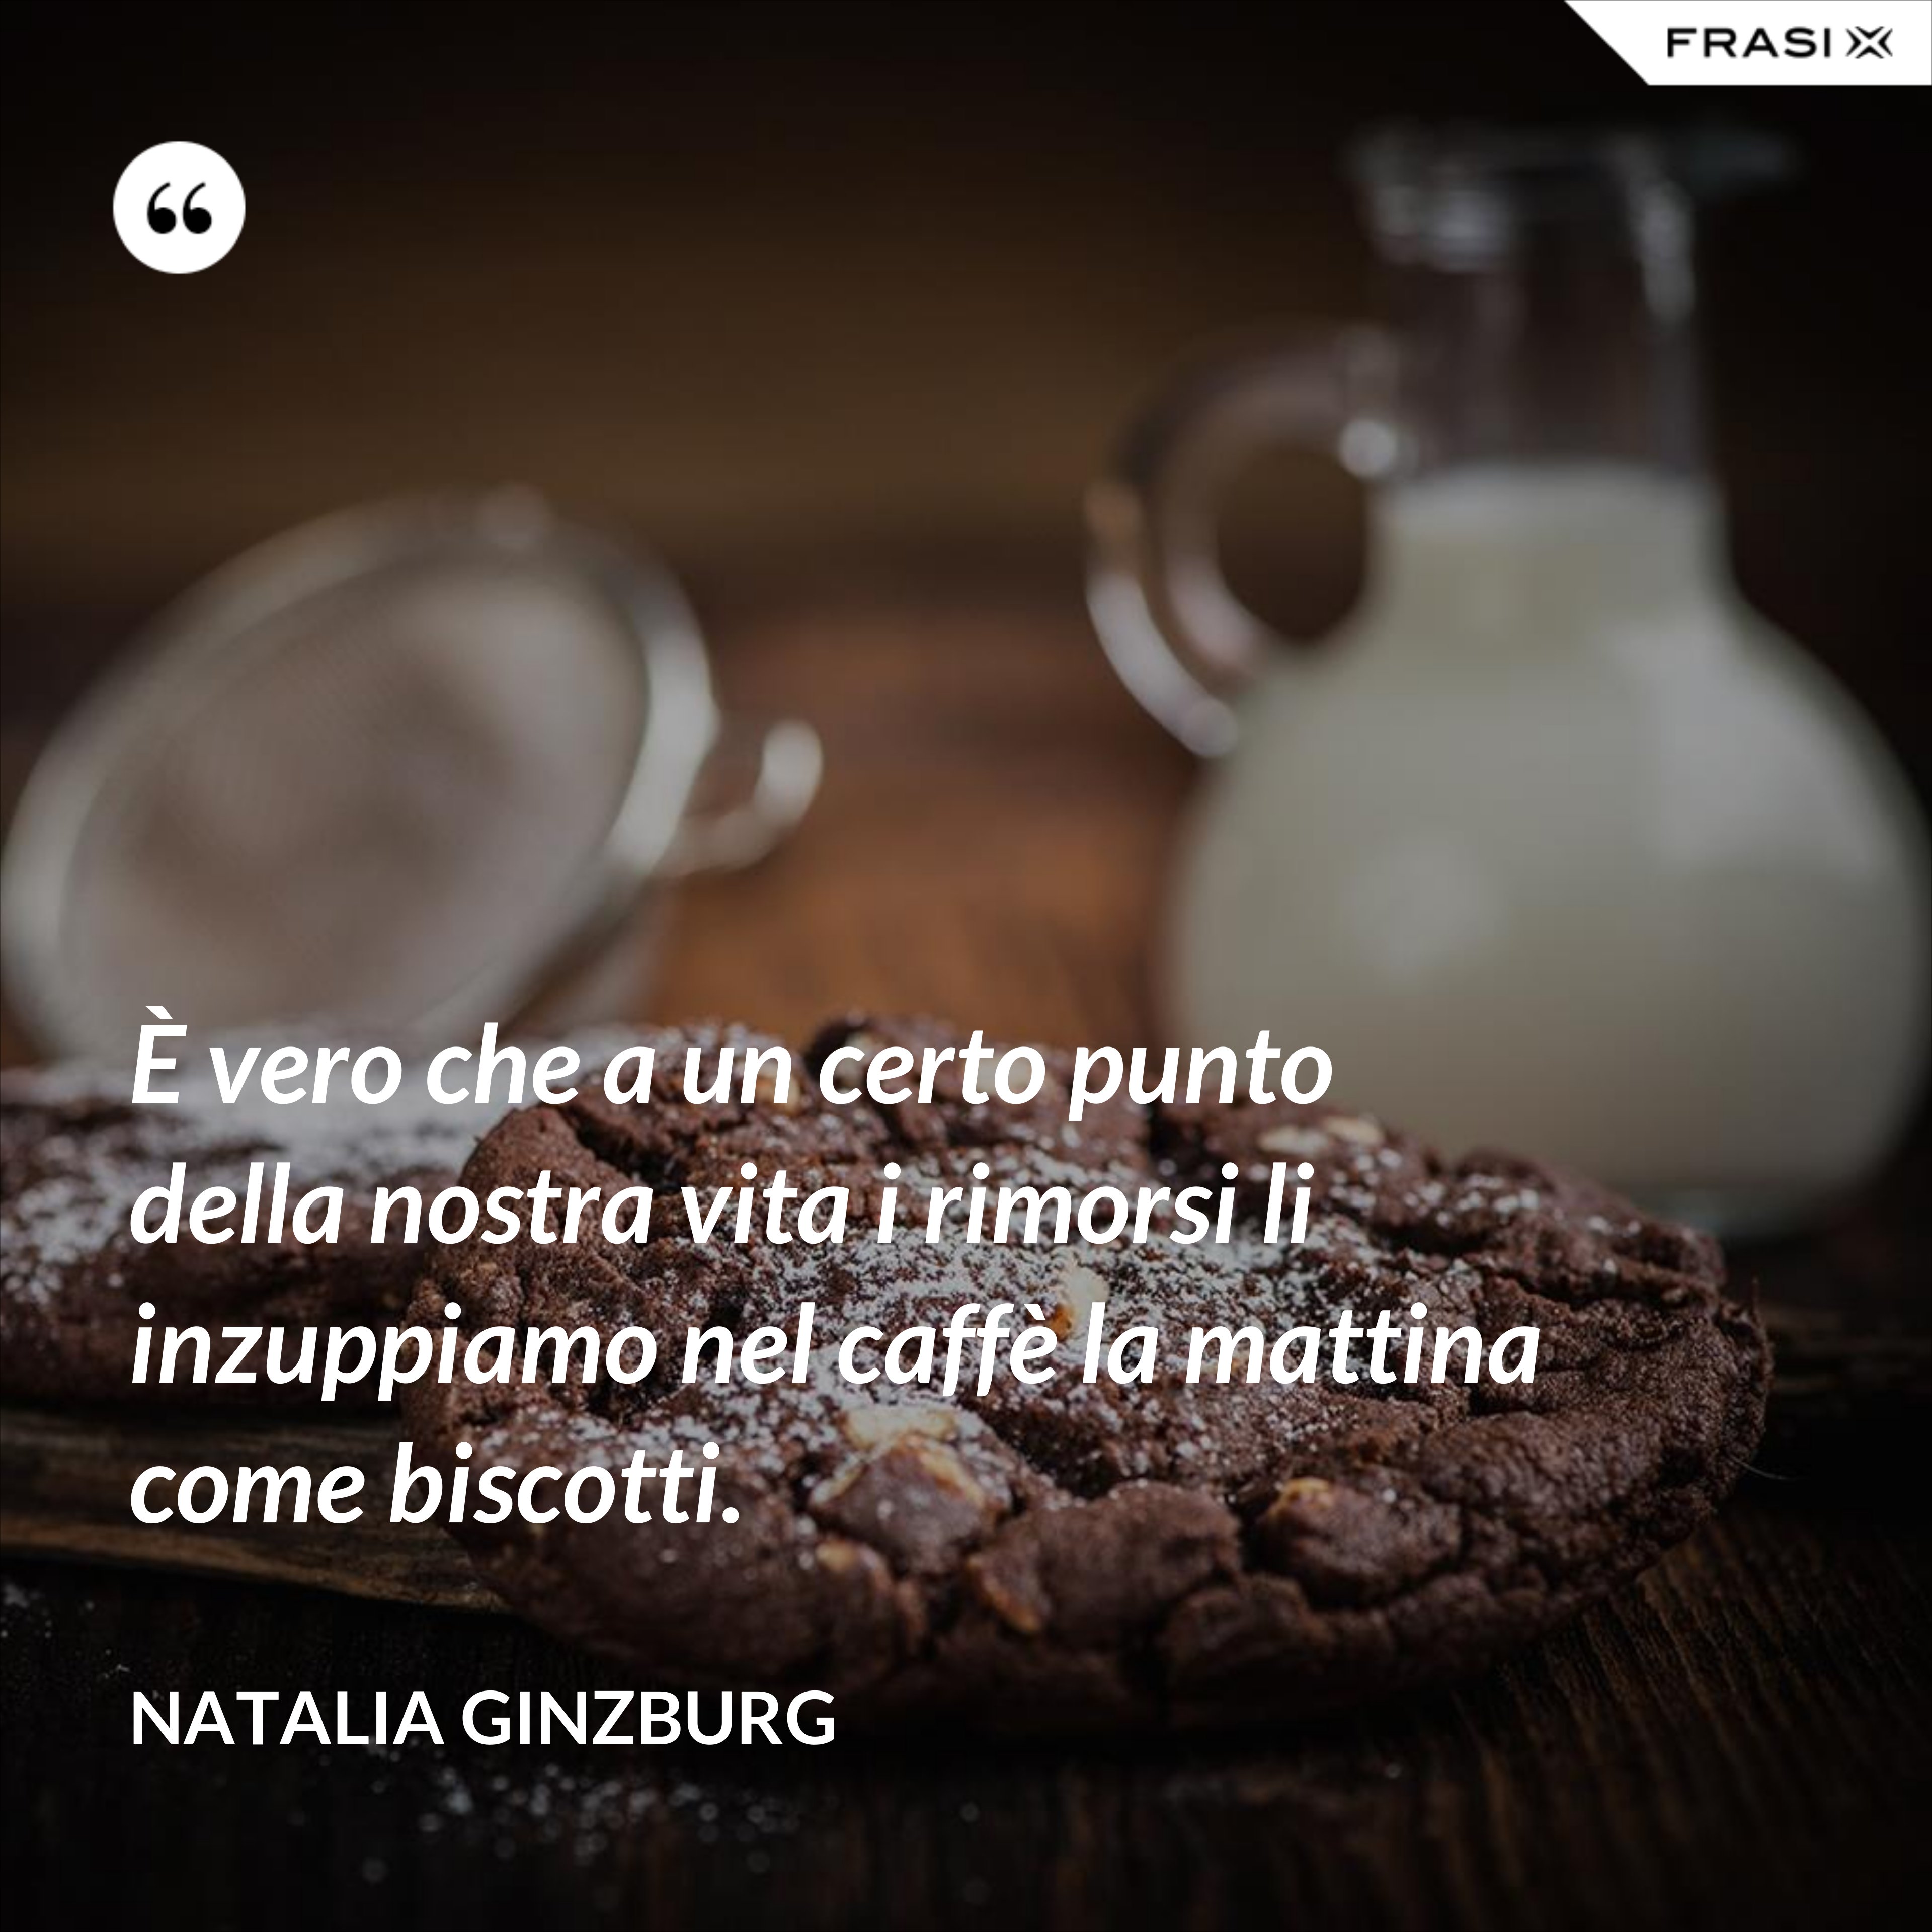 È vero che a un certo punto della nostra vita i rimorsi li inzuppiamo nel caffè la mattina come biscotti. - Natalia Ginzburg